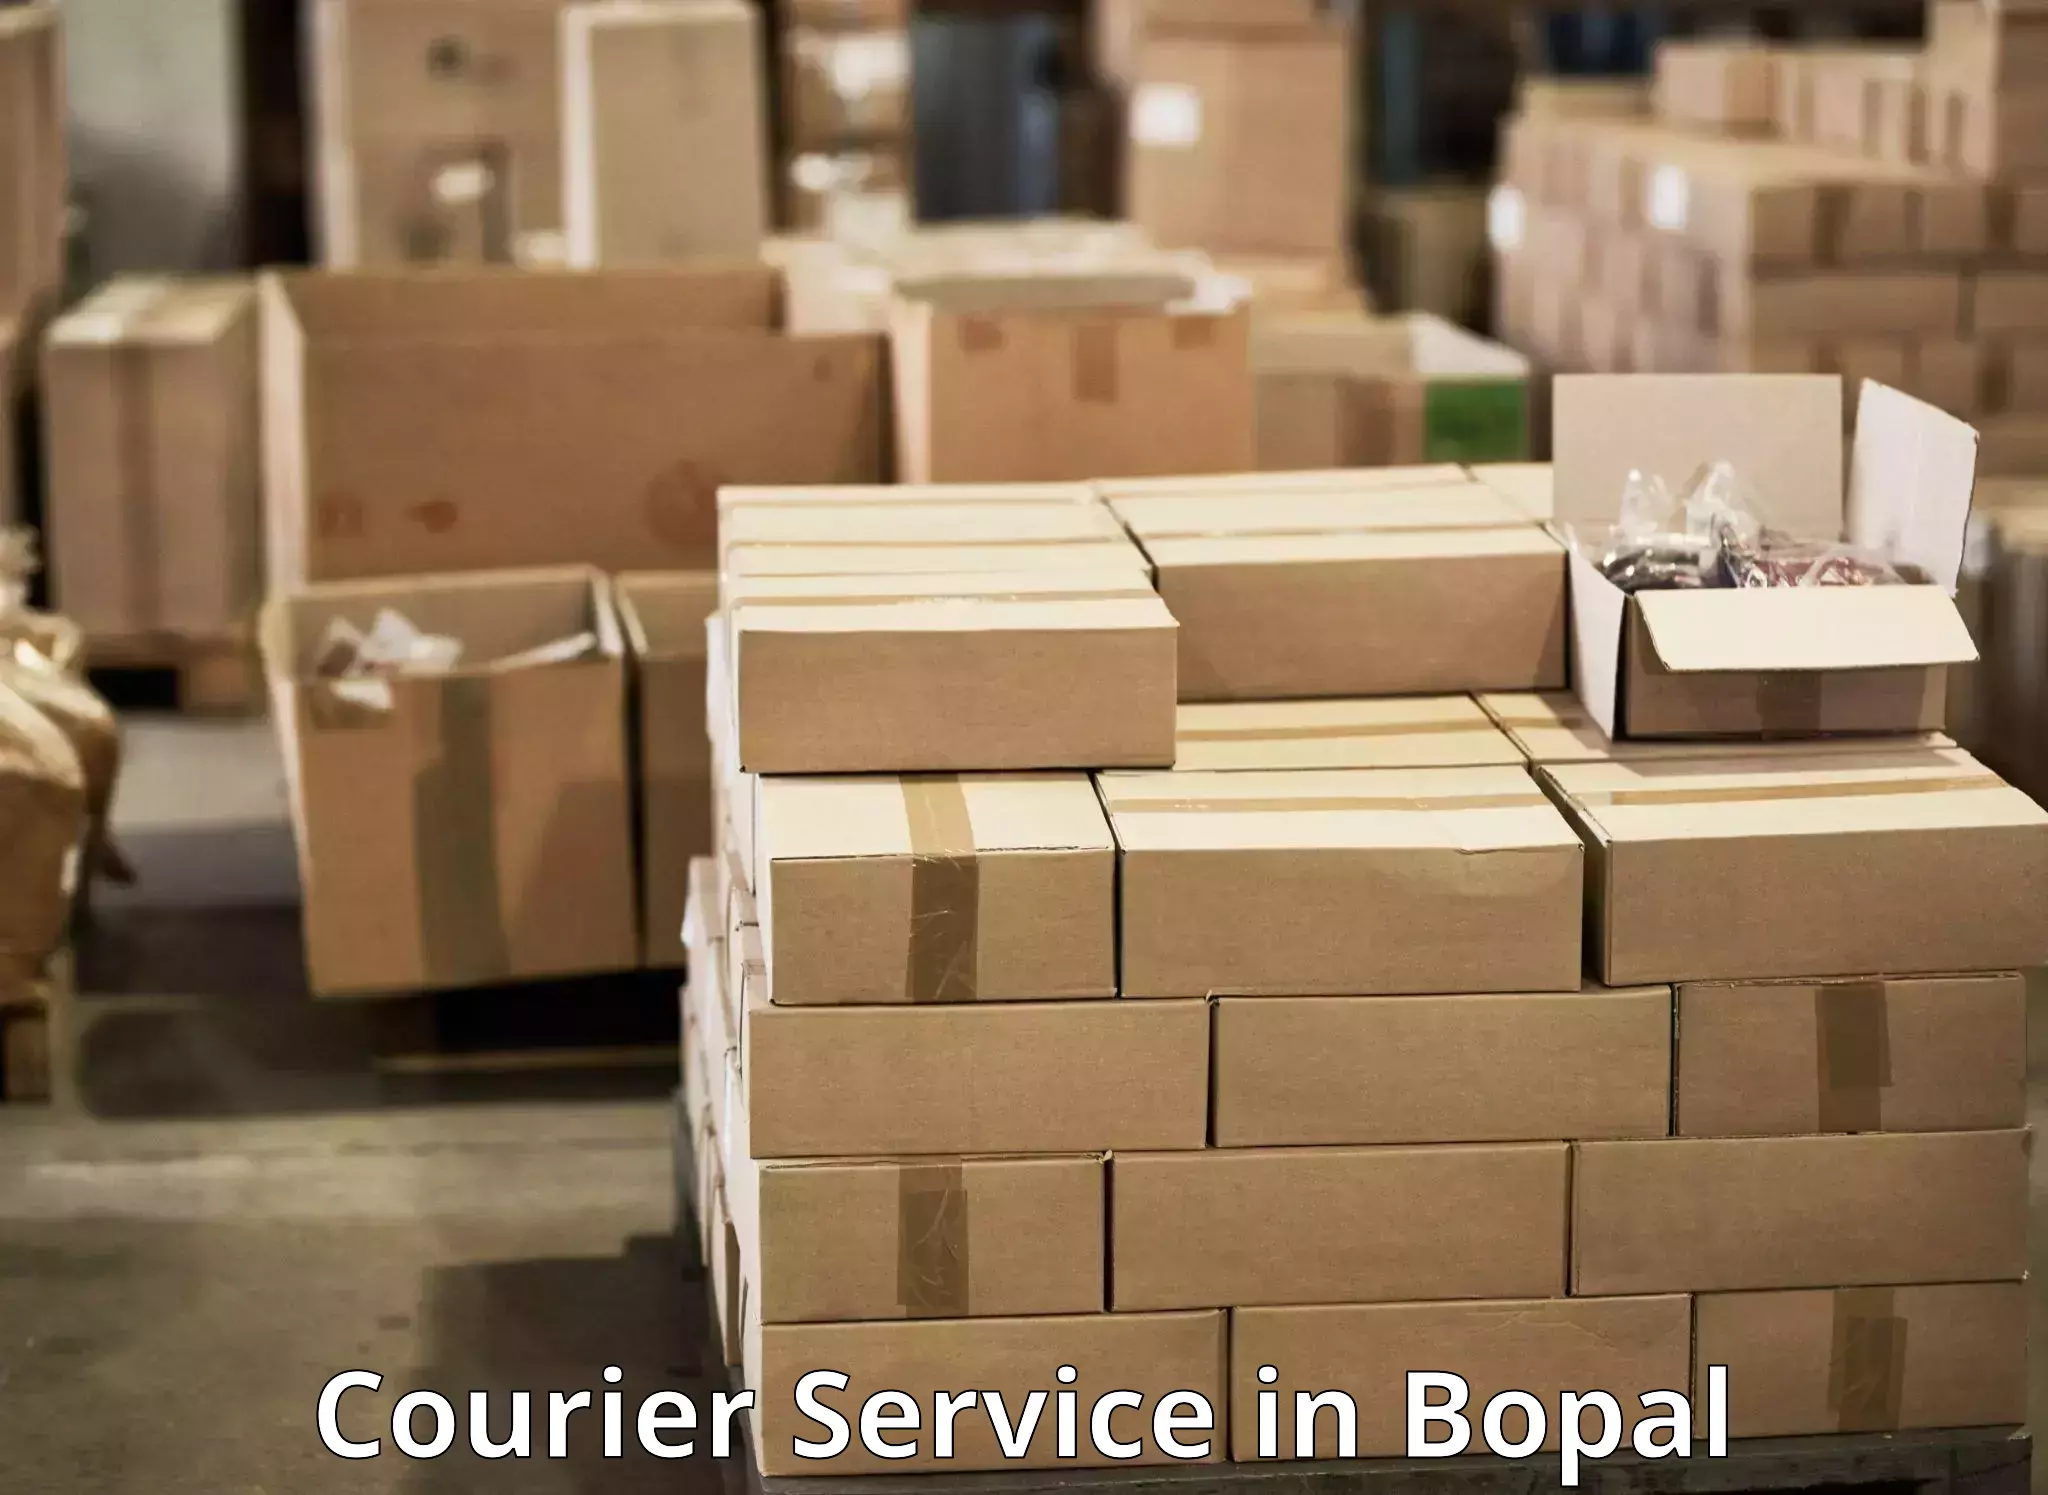 Fast parcel dispatch in Bopal